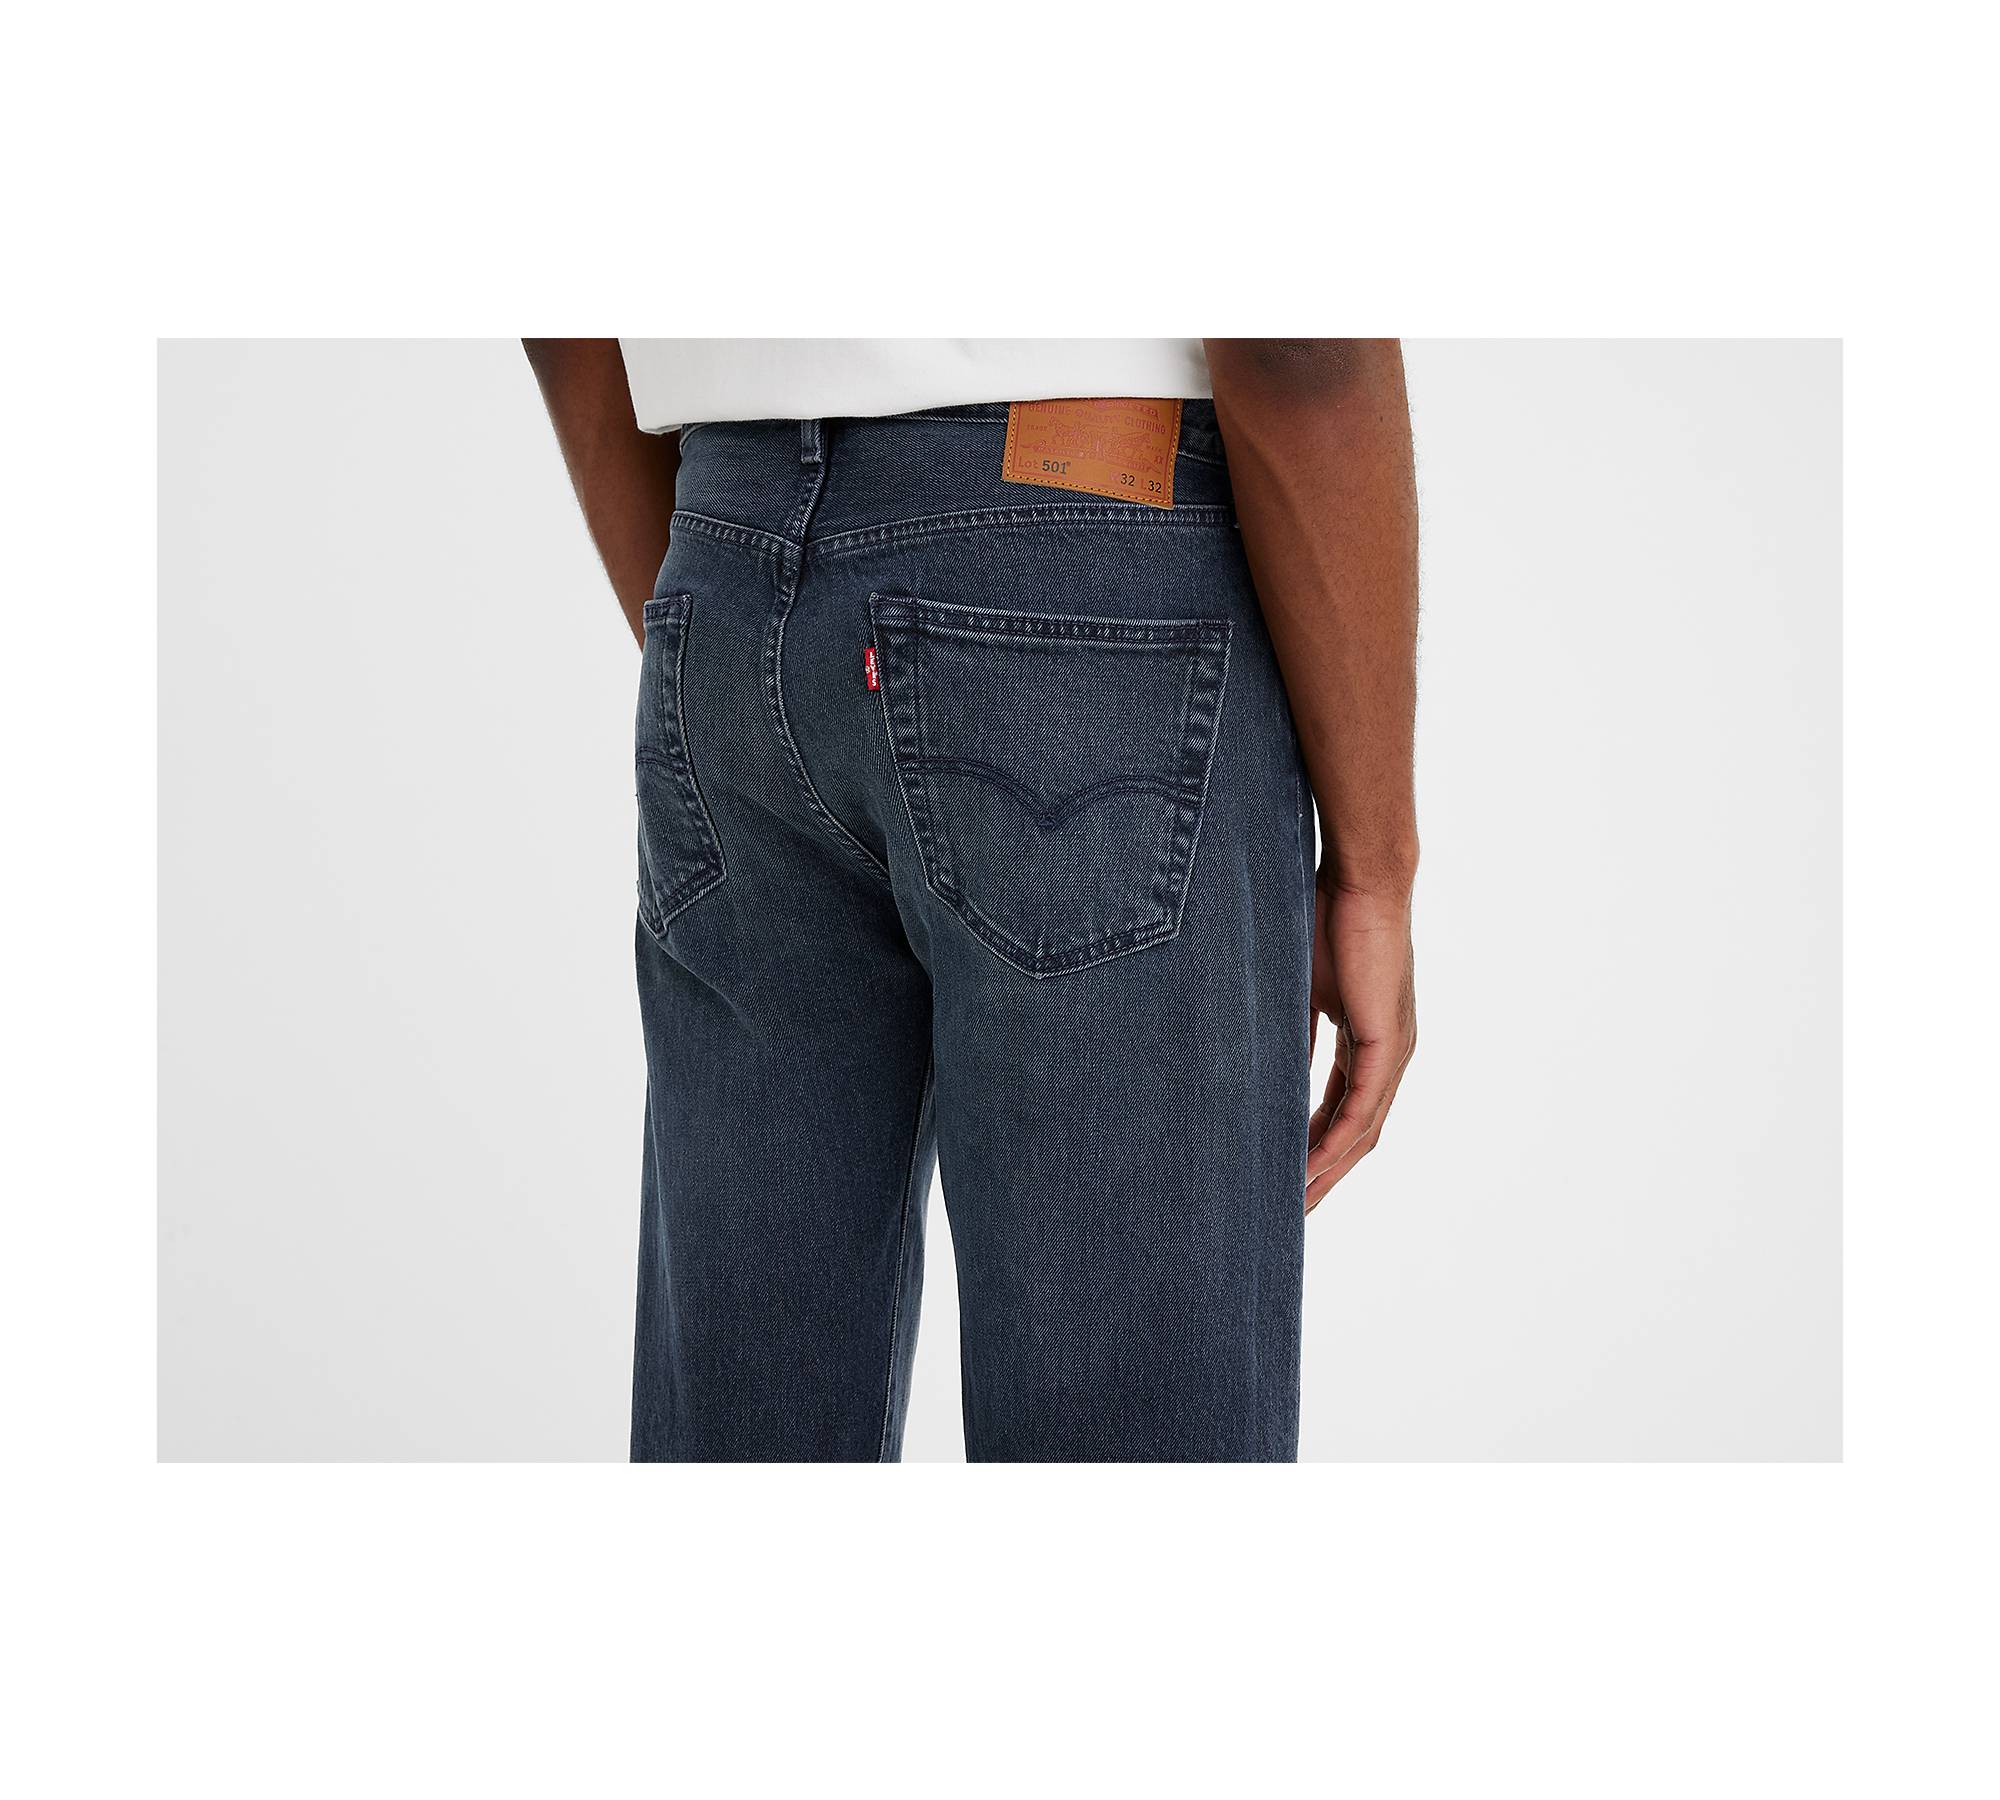 Levi's Men's 501 Slim Taper Jeans, I Got Detention, Blue, 29 at   Men's Clothing store